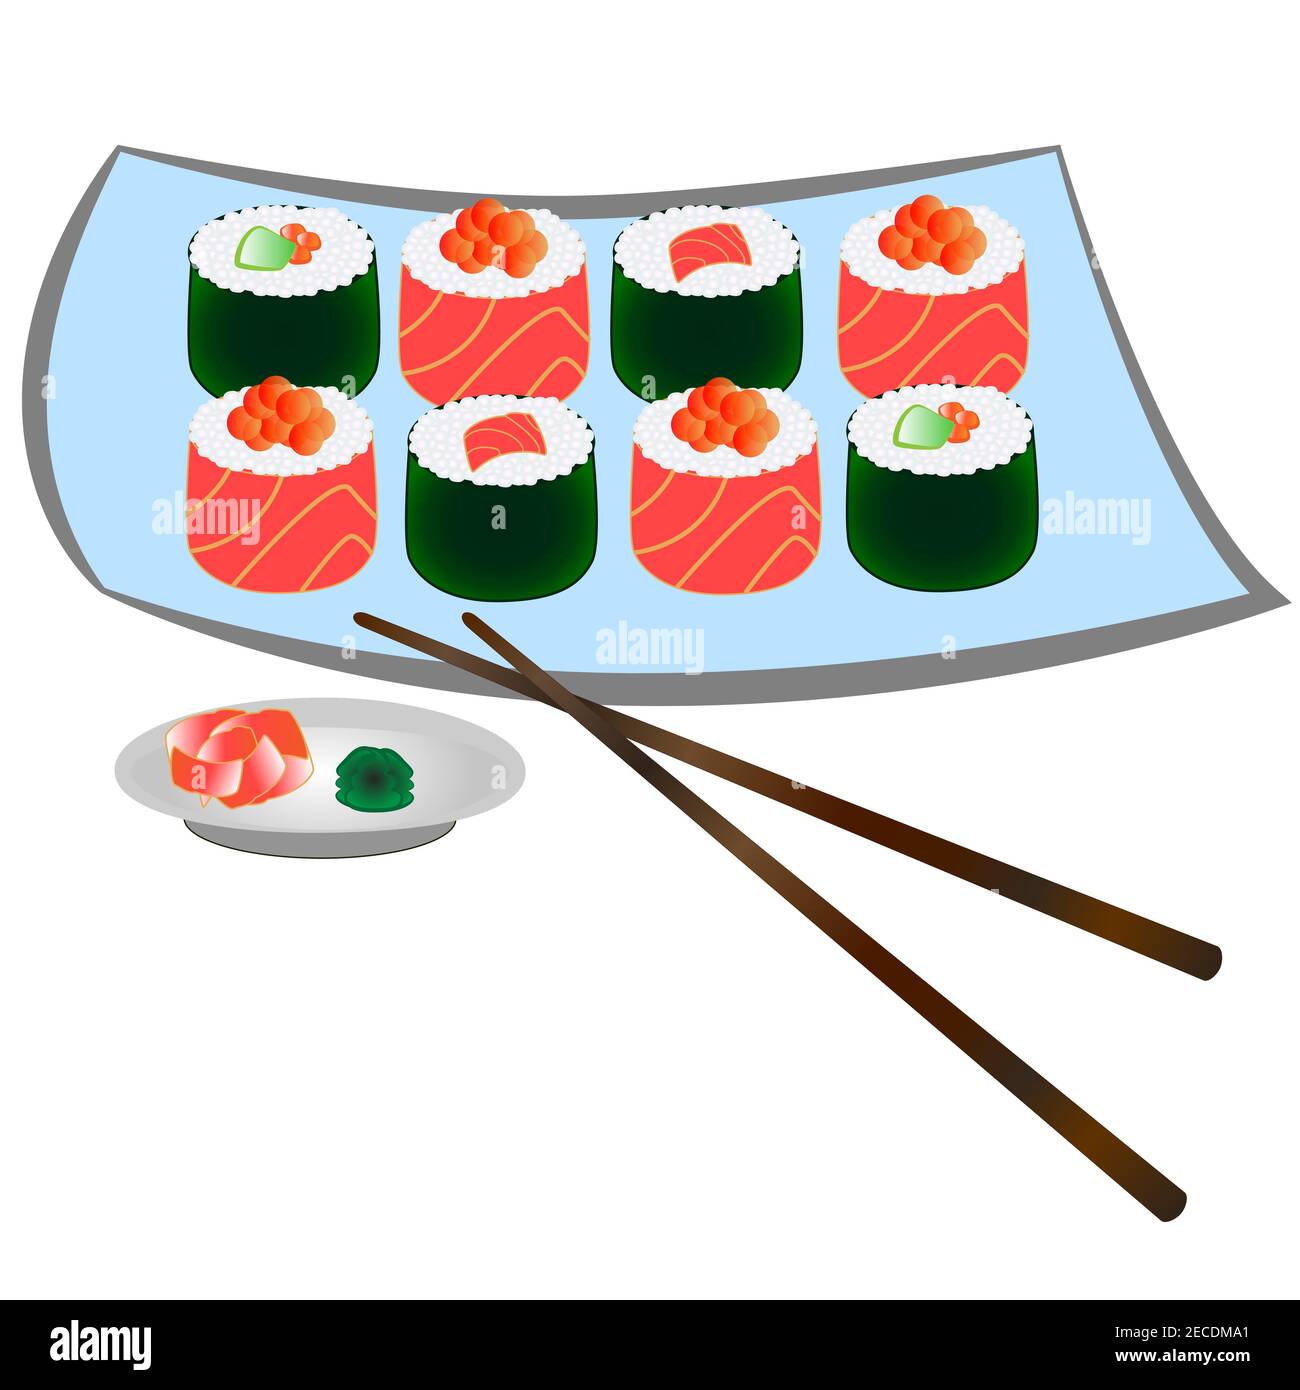 Ensemble de sushis et de petits pains prêts à l'emploi, isolés sur fond blanc. Un plat traditionnel japonais. Illustration de Vecteur